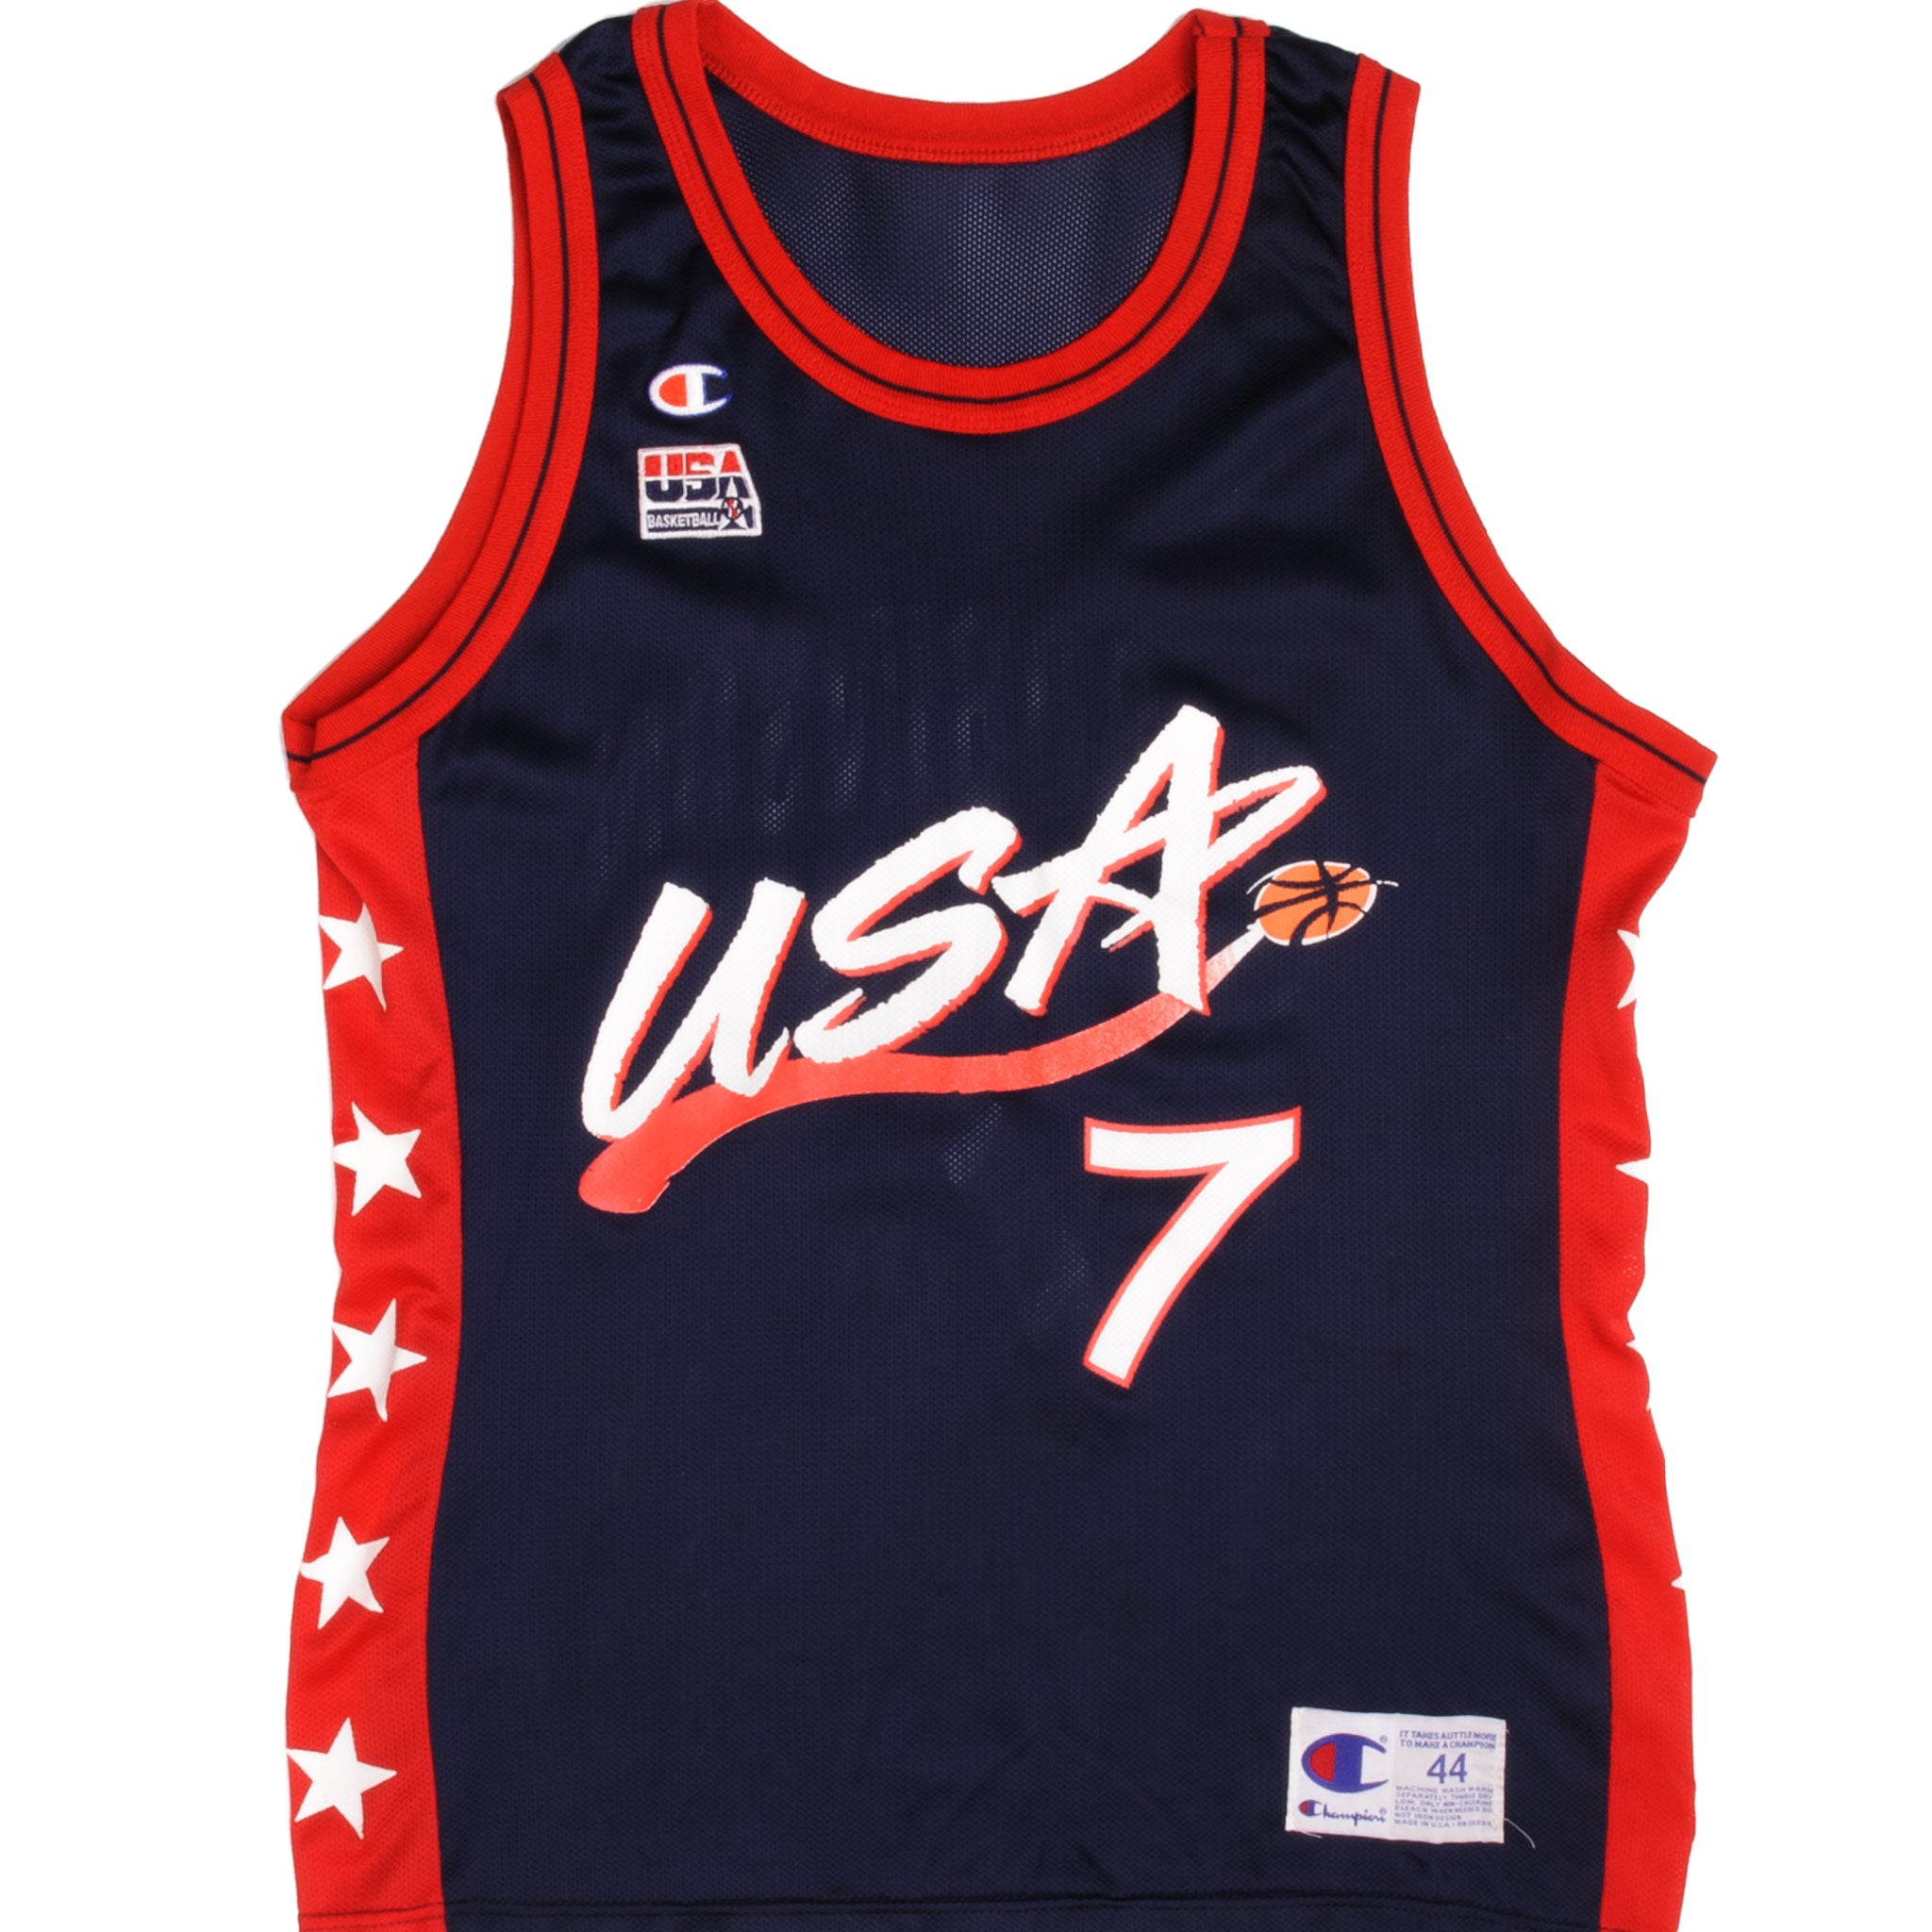 Vintage Champion USA Champion Basketball Jersey